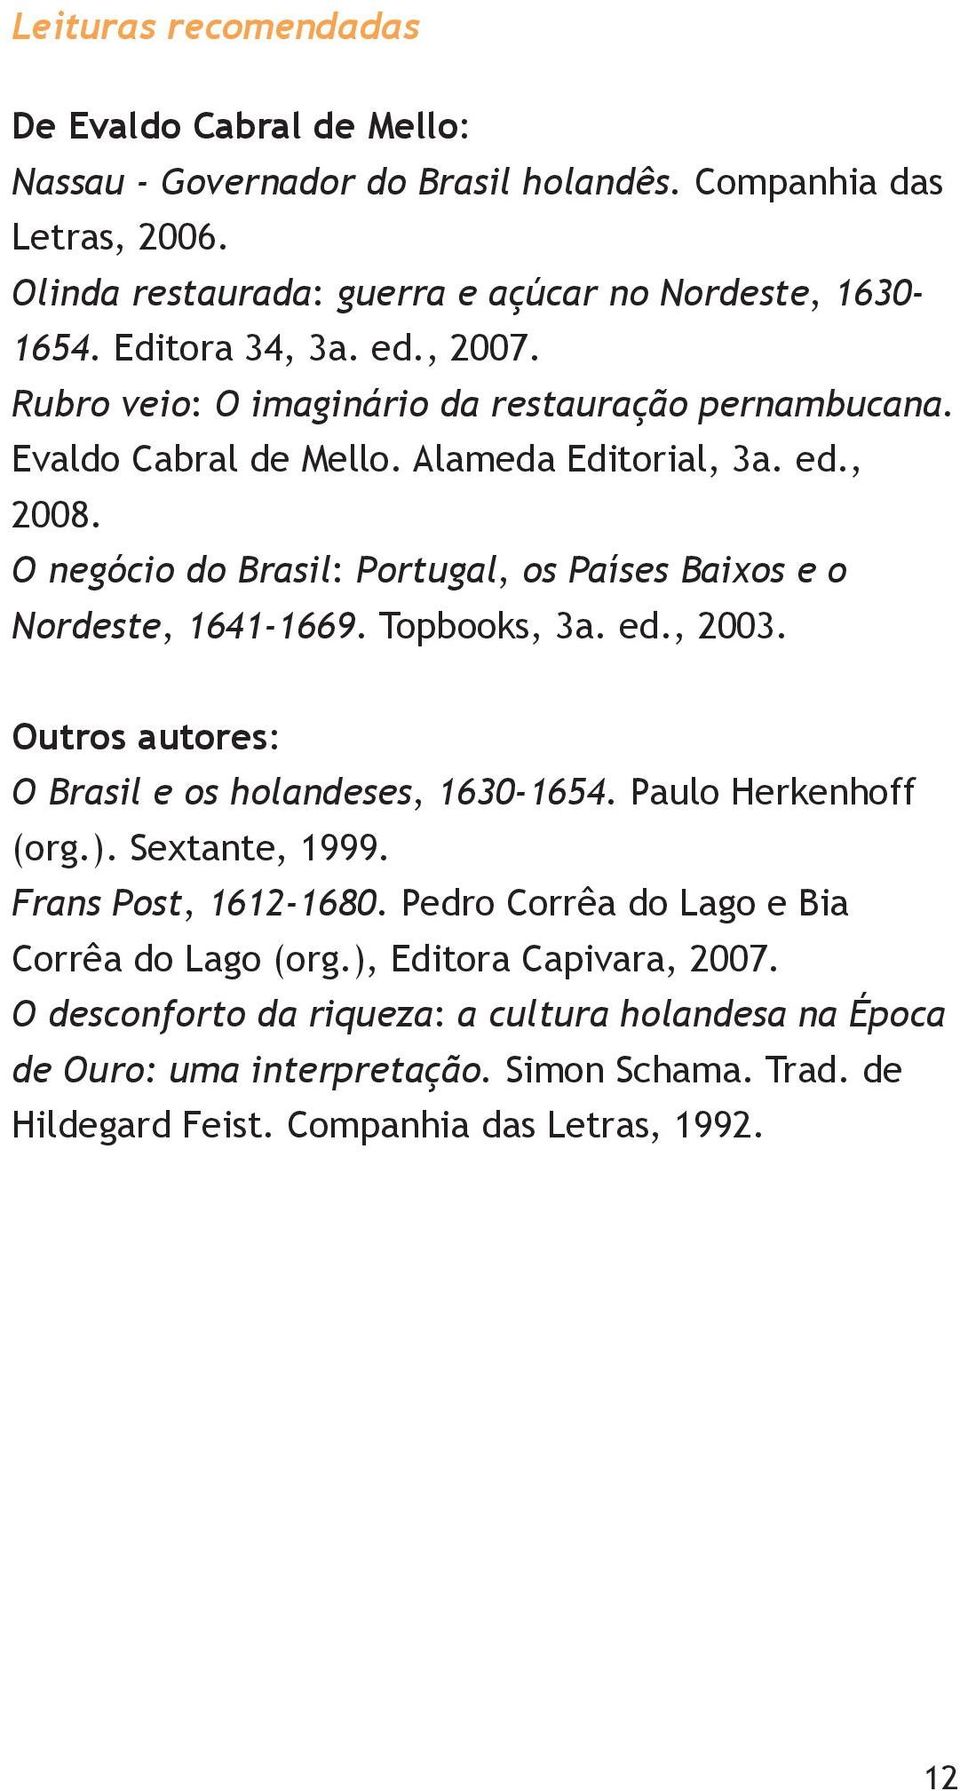 O negócio do Brasil: Portugal, os Países Baixos e o Nordeste, 1641-1669. Topbooks, 3a. ed., 2003. Outros autores: O Brasil e os holandeses, 1630-1654. Paulo Herkenhoff (org.).